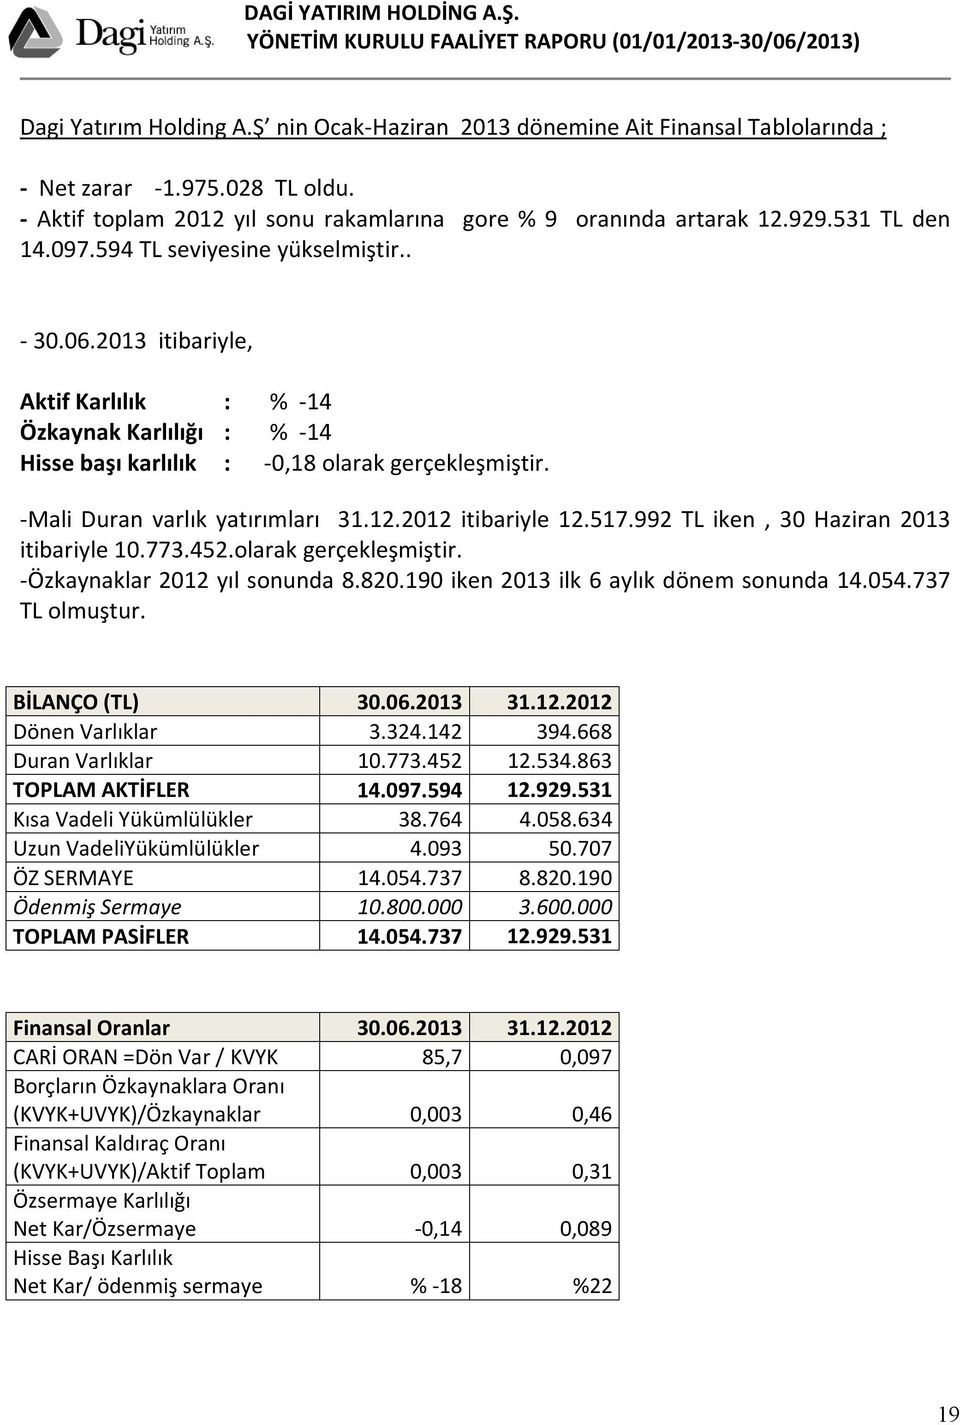 -Mali Duran varlık yatırımları 31.12.2012 itibariyle 12.517.992 TL iken, 30 Haziran 2013 itibariyle 10.773.452.olarak gerçekleşmiştir. -Özkaynaklar 2012 yıl sonunda 8.820.